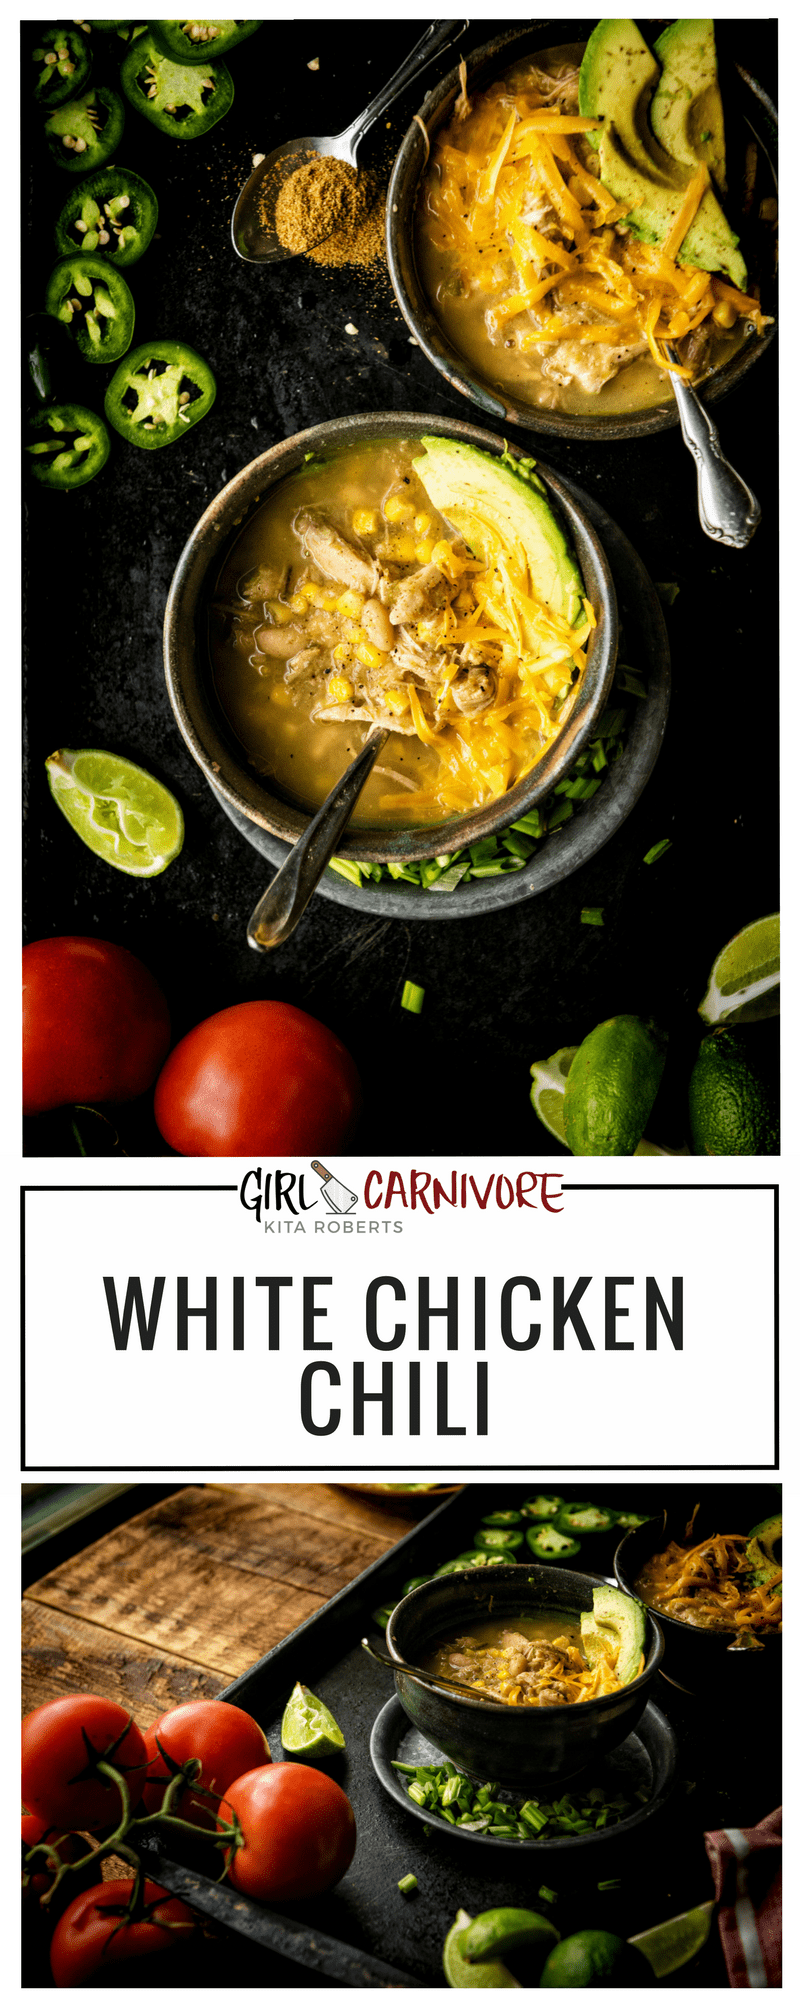 White Chicken Chili Recipe at GirlCarnivore.com